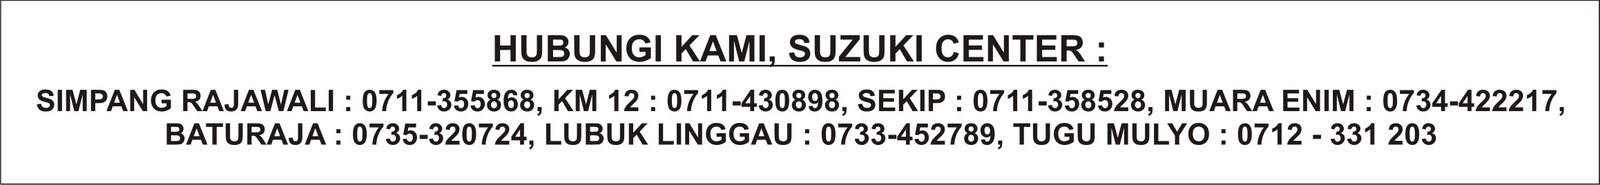 Suzuki Center Palembang: Daftar Angsuran Sepeda Motor 